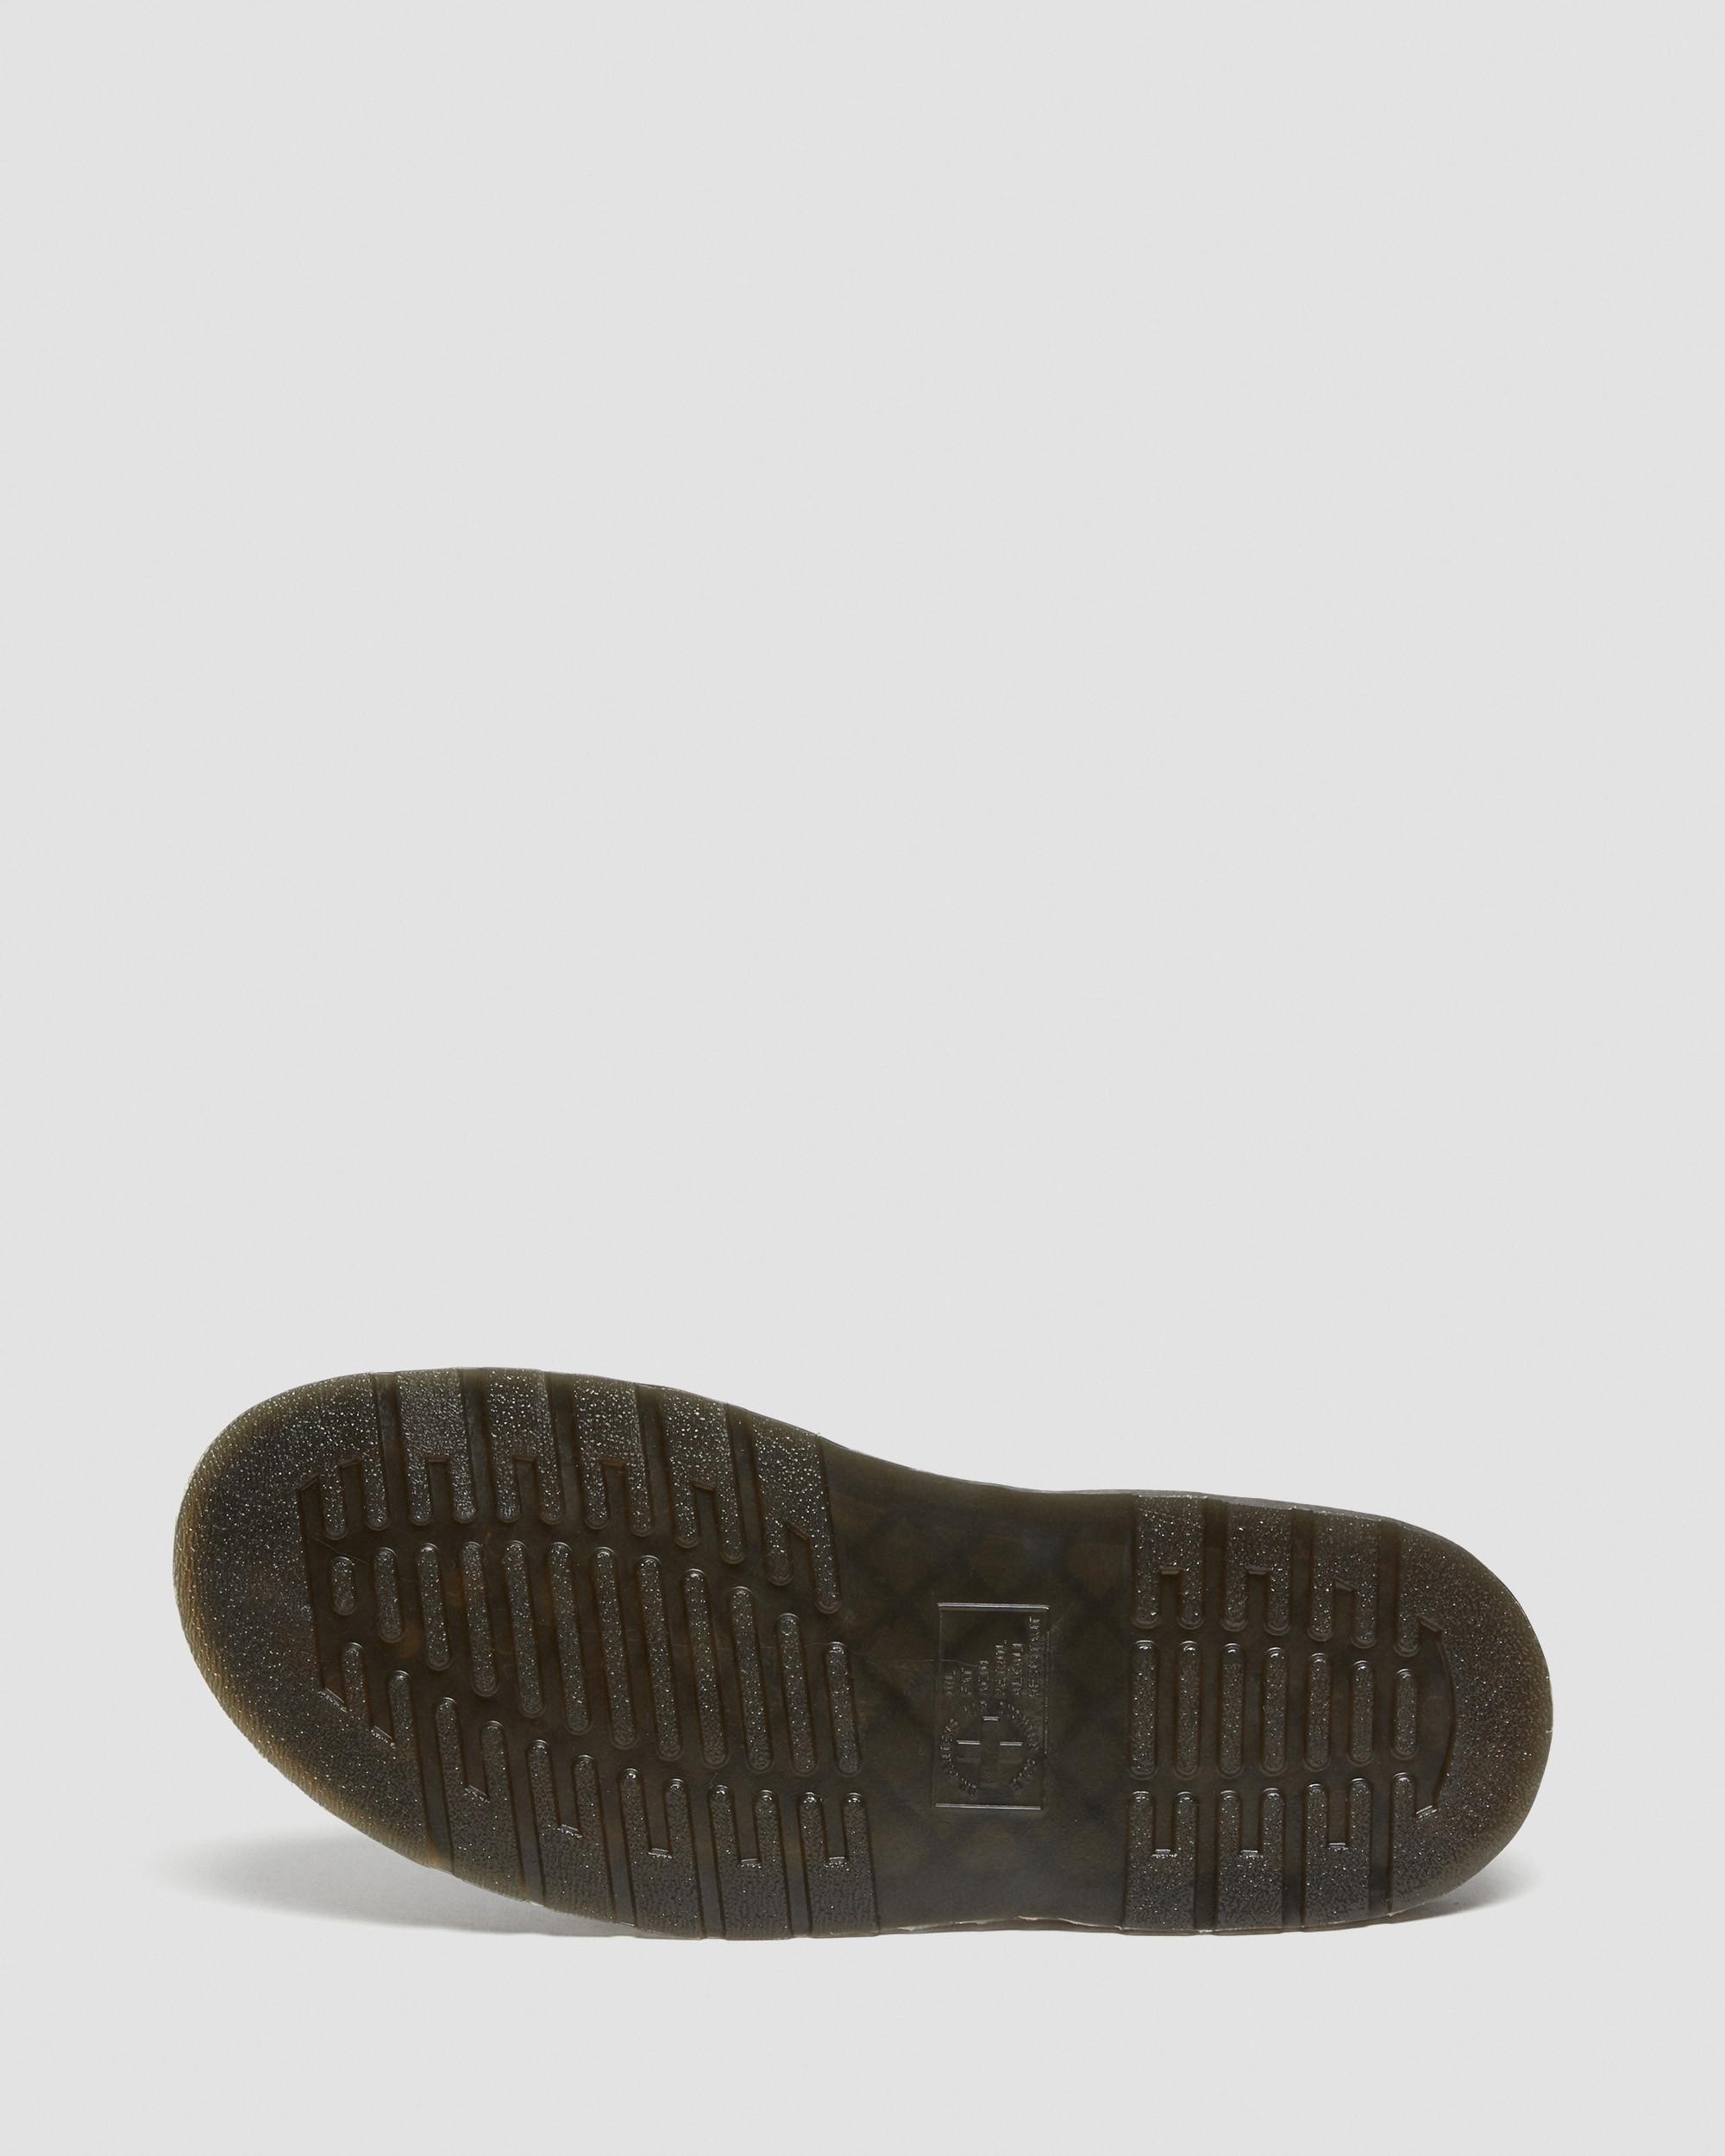 Garin Brando Leather Sandals